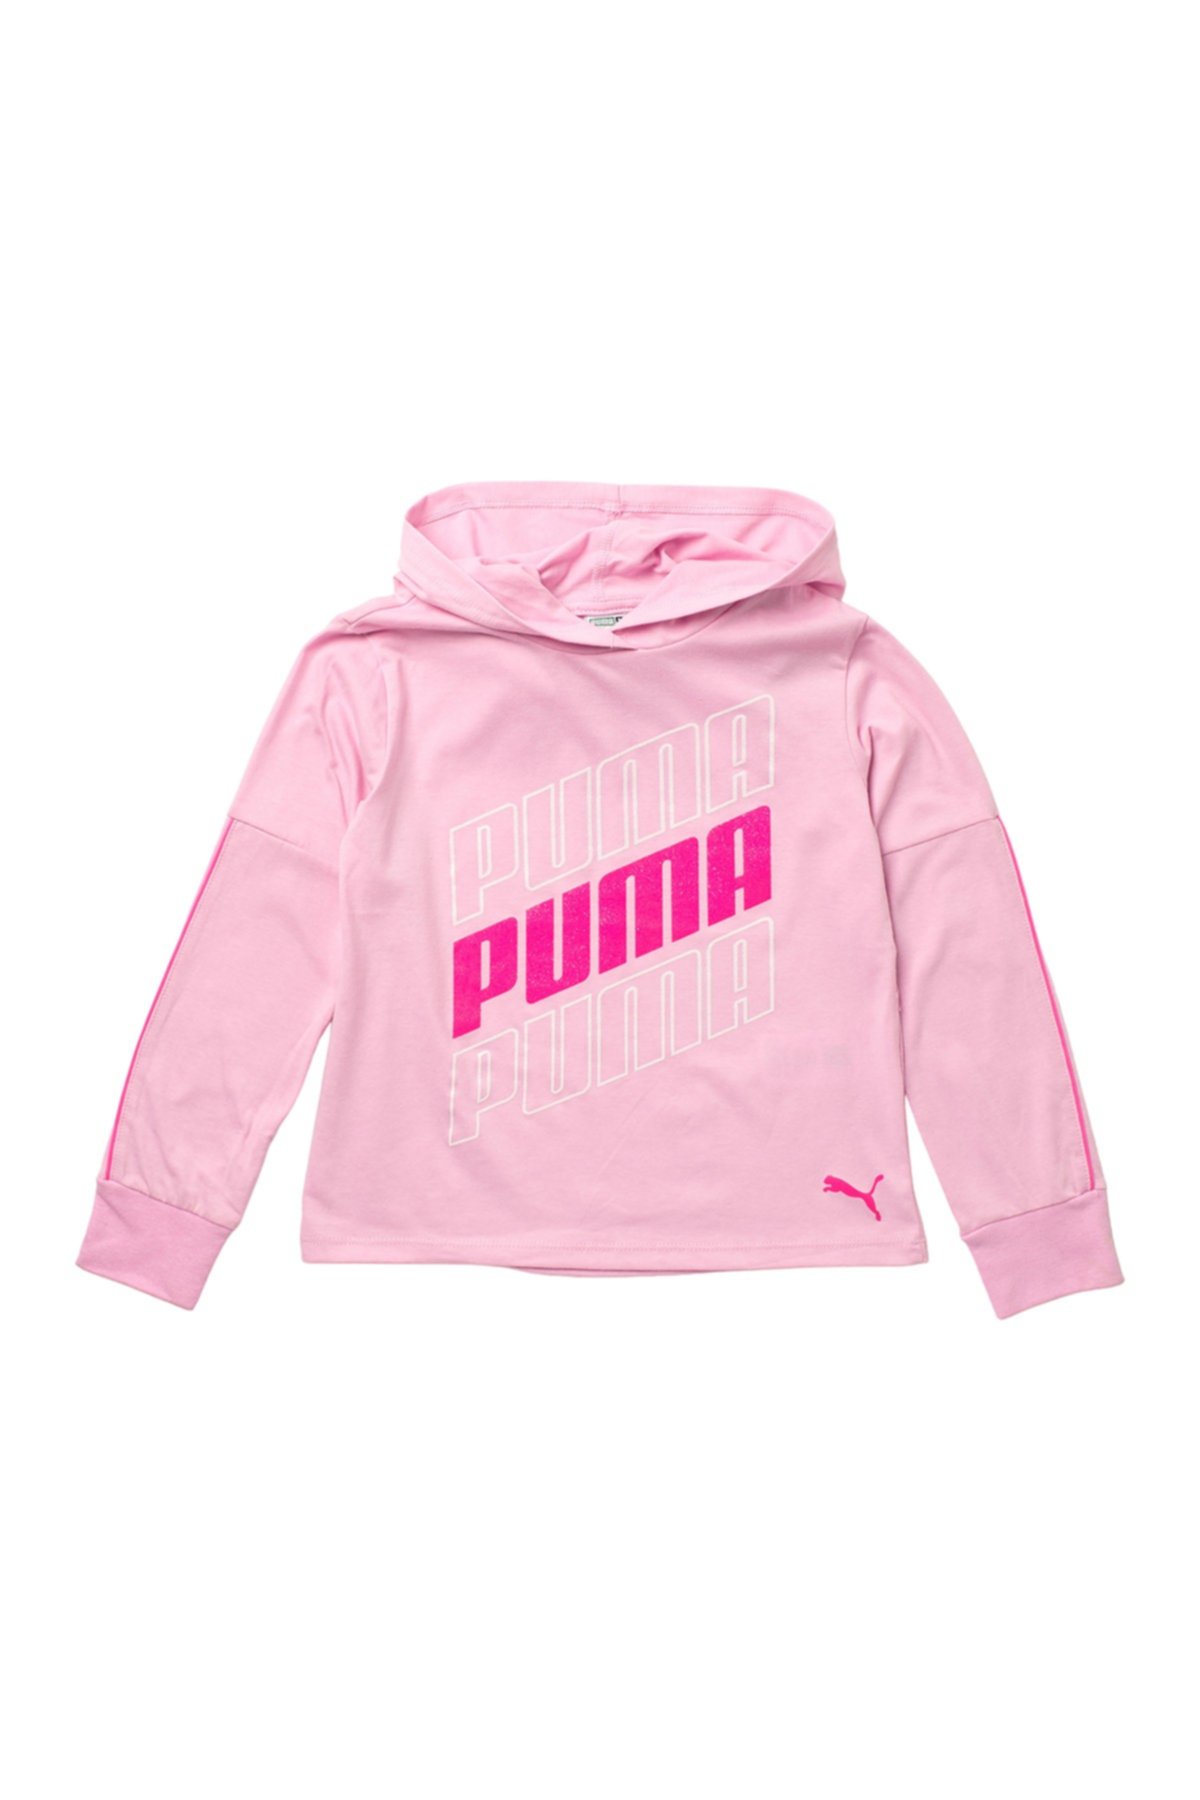 Флисовый пуловер с капюшоном Modern Sports Pack (для больших девочек) PUMA